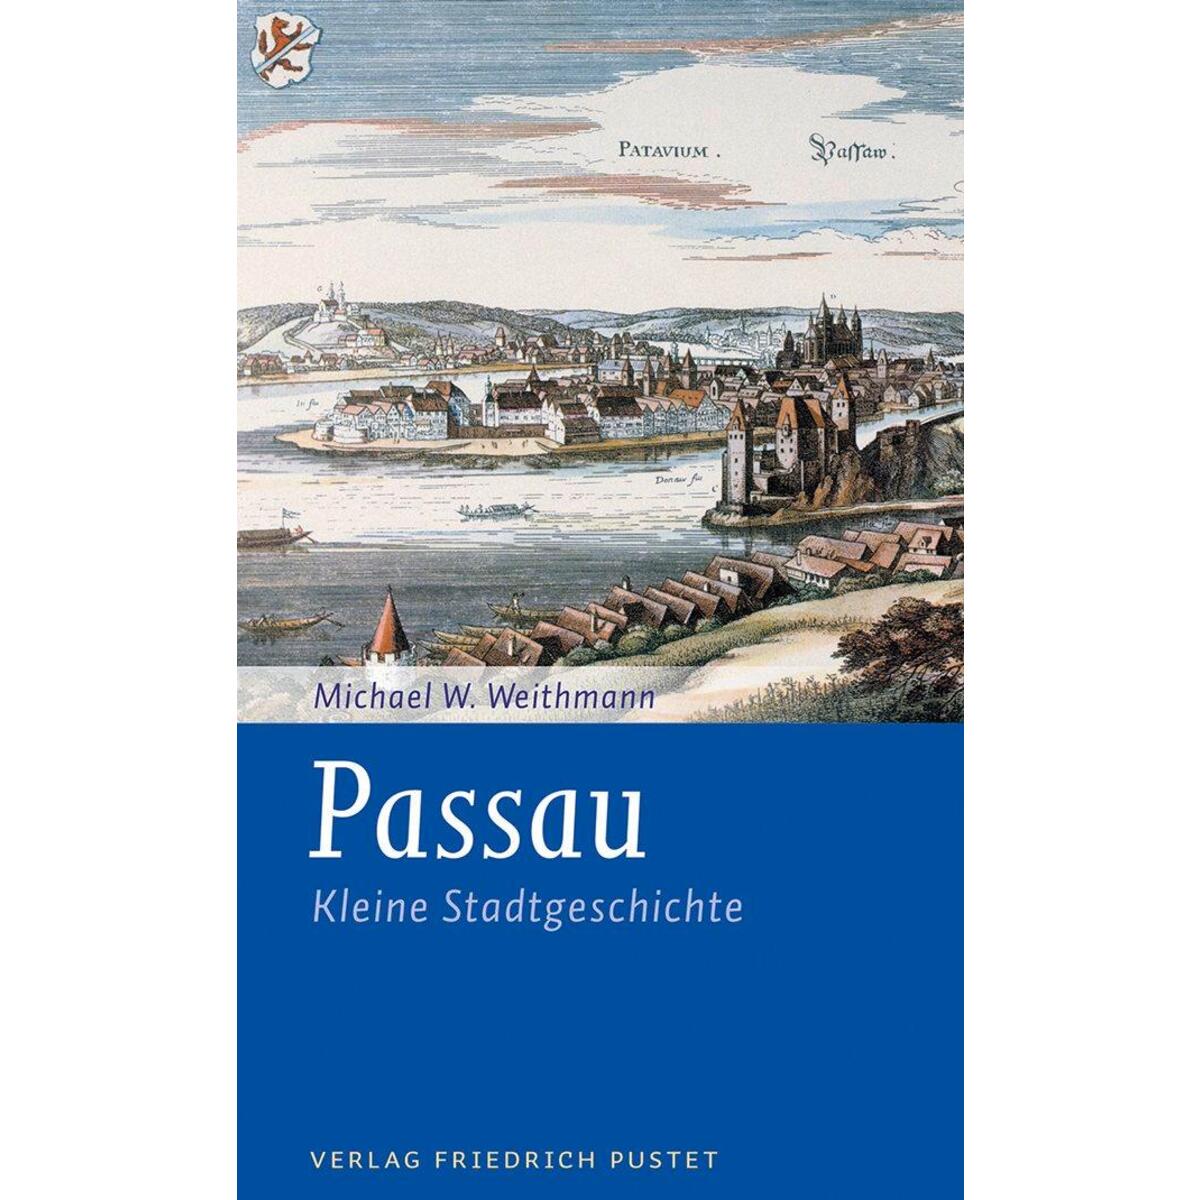 Passau von Pustet, Friedrich GmbH